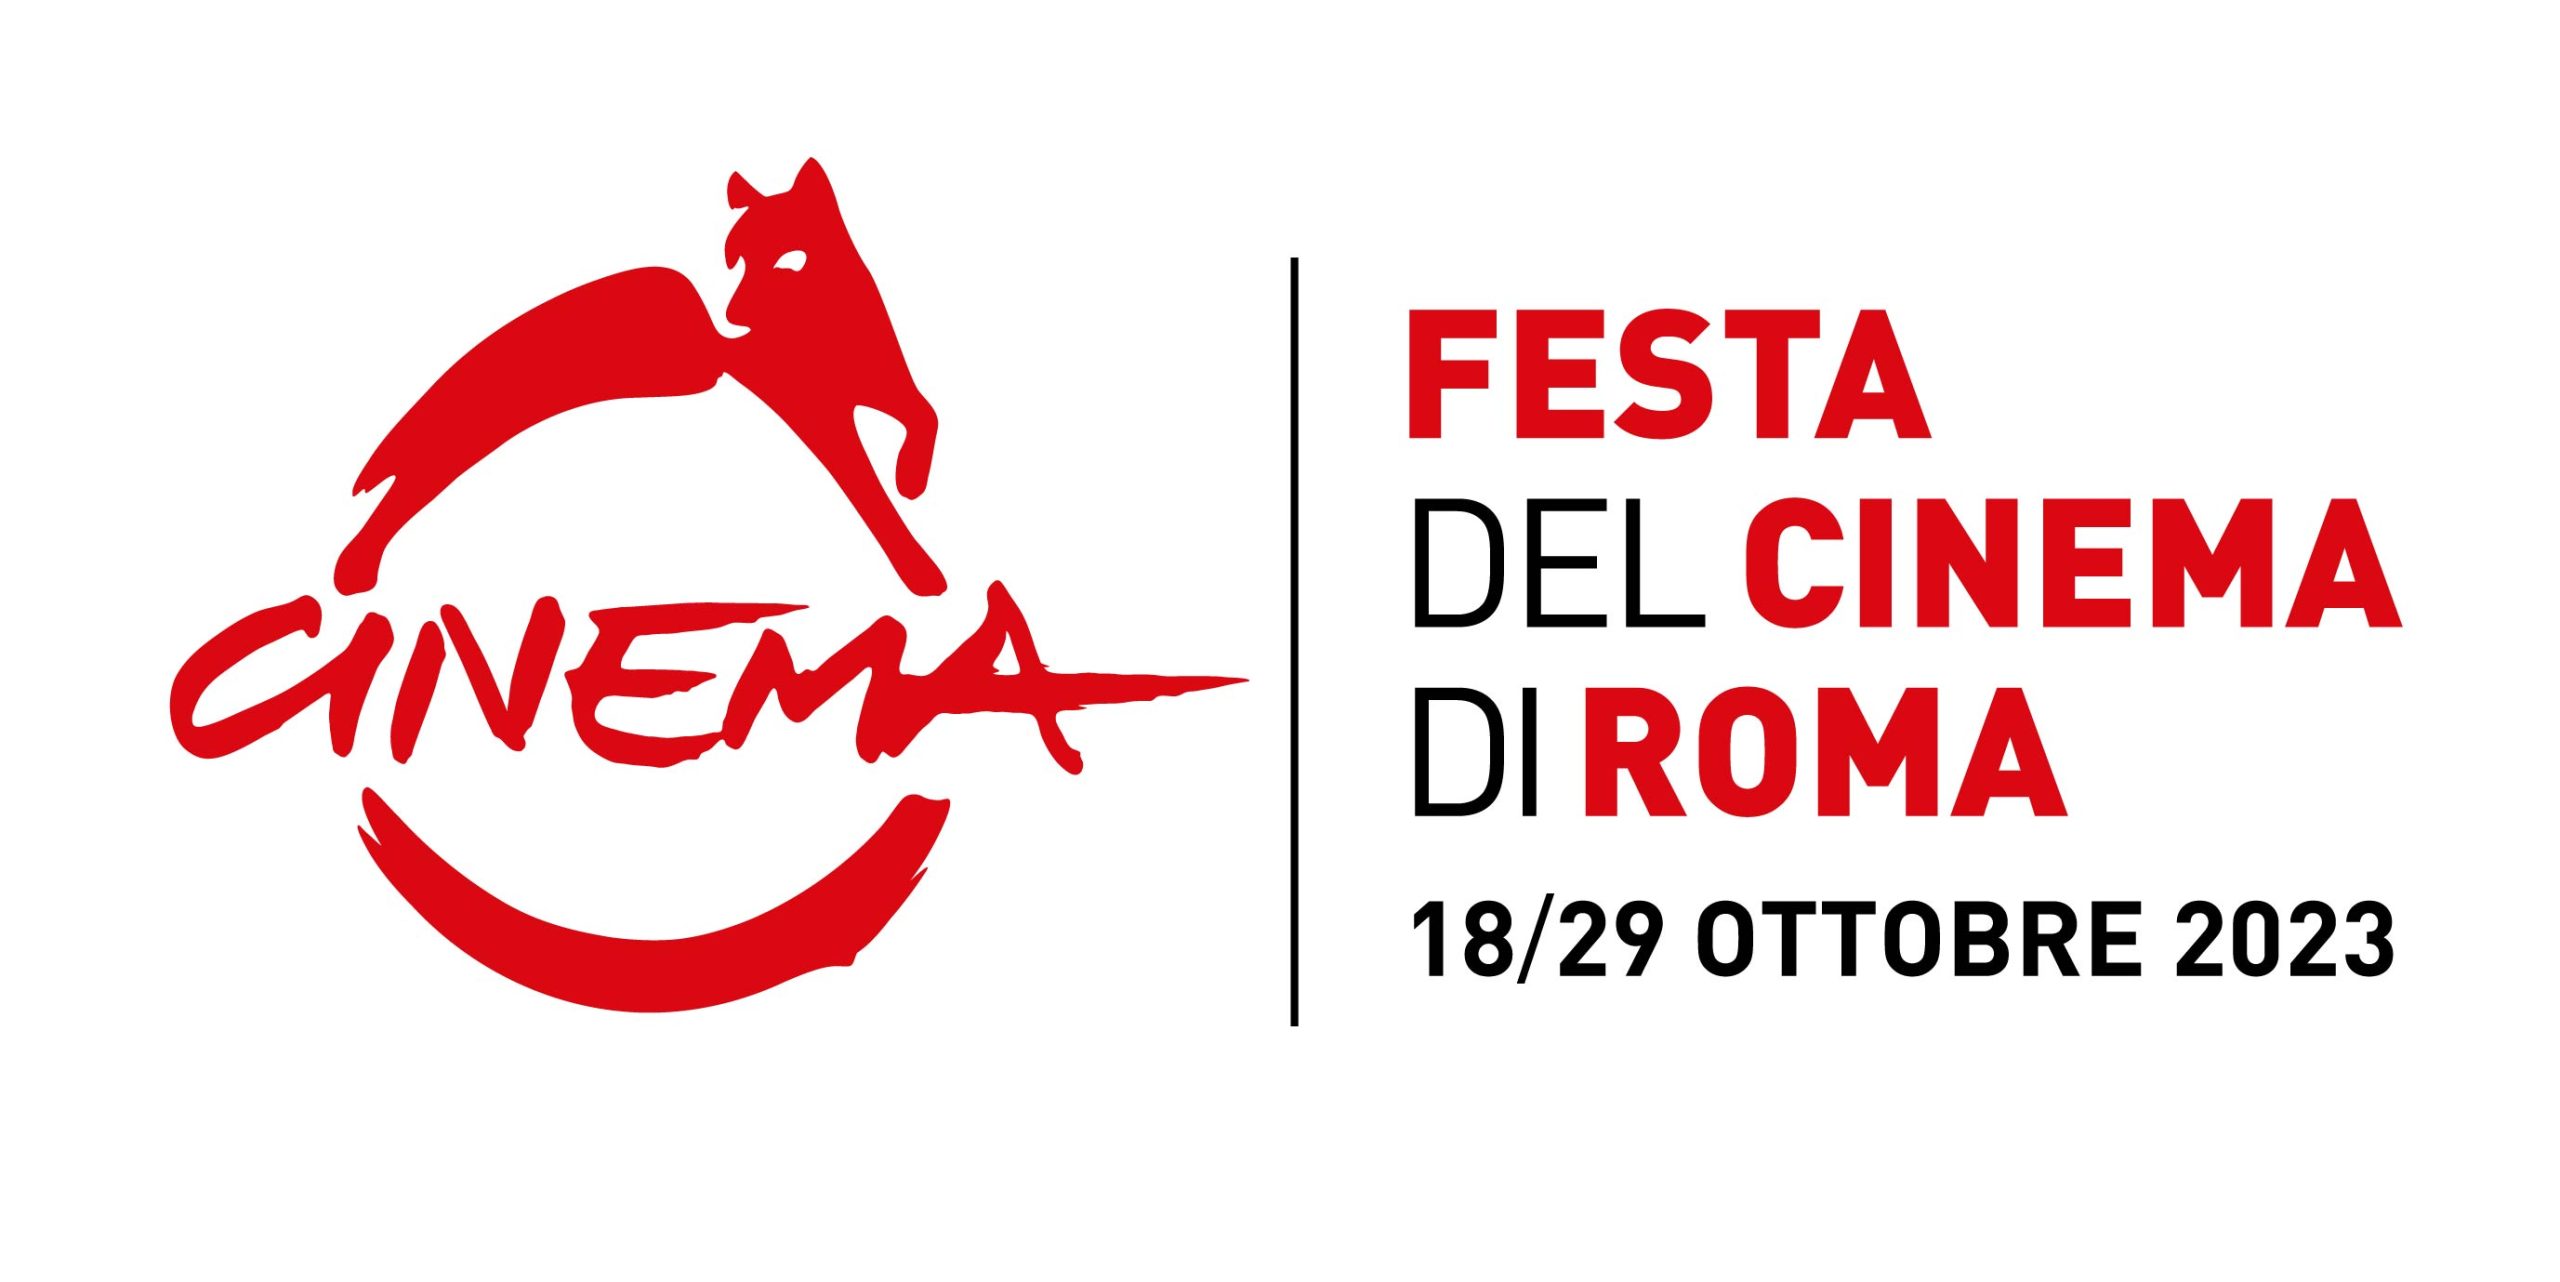 Festa del cinema di Roma 2023 poster